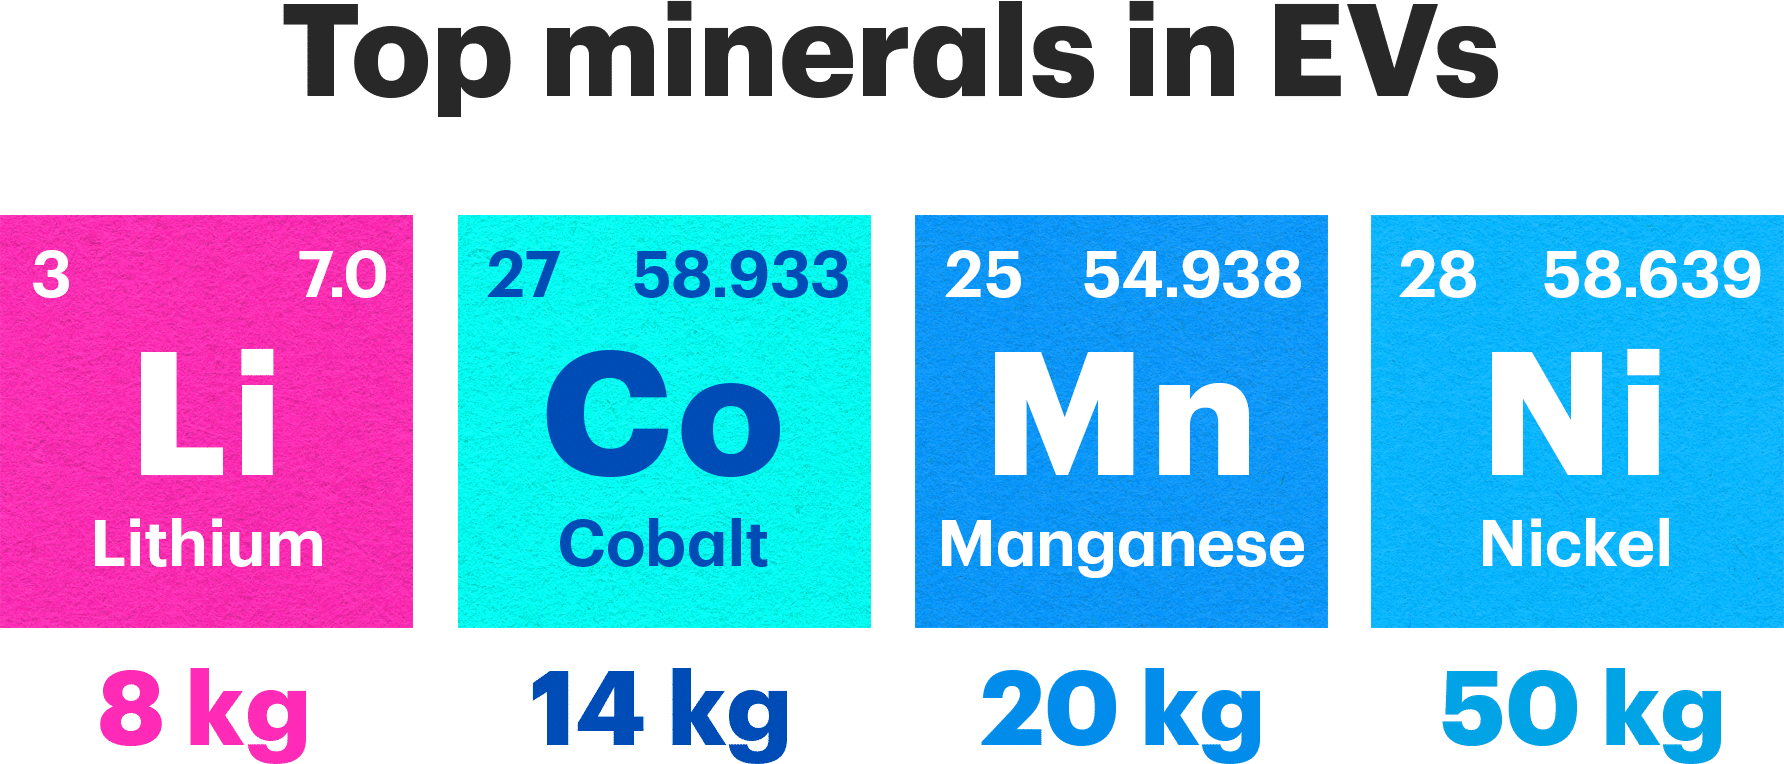 Top minerals in EVs: Lithium (Li) 8 kg, Cobalt (Co) 14 kg, Manganese (Mn) 20 kg, Nickel (Ni) 50 kg